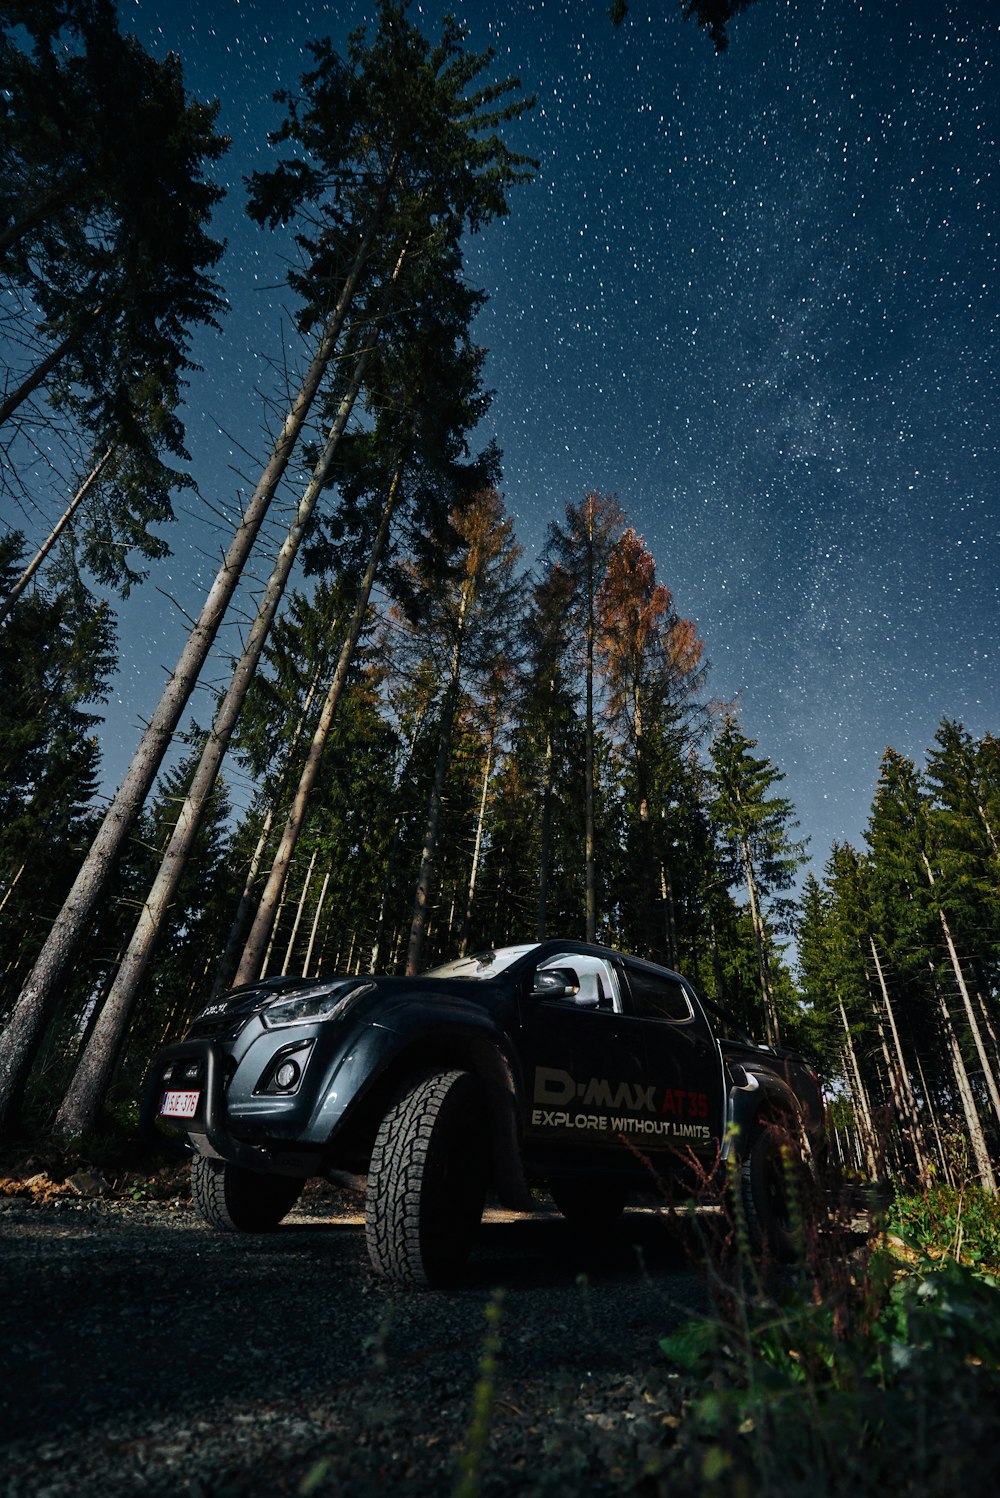 Isuzu D-Max preto estacionado perto de árvores da floresta durante a noite